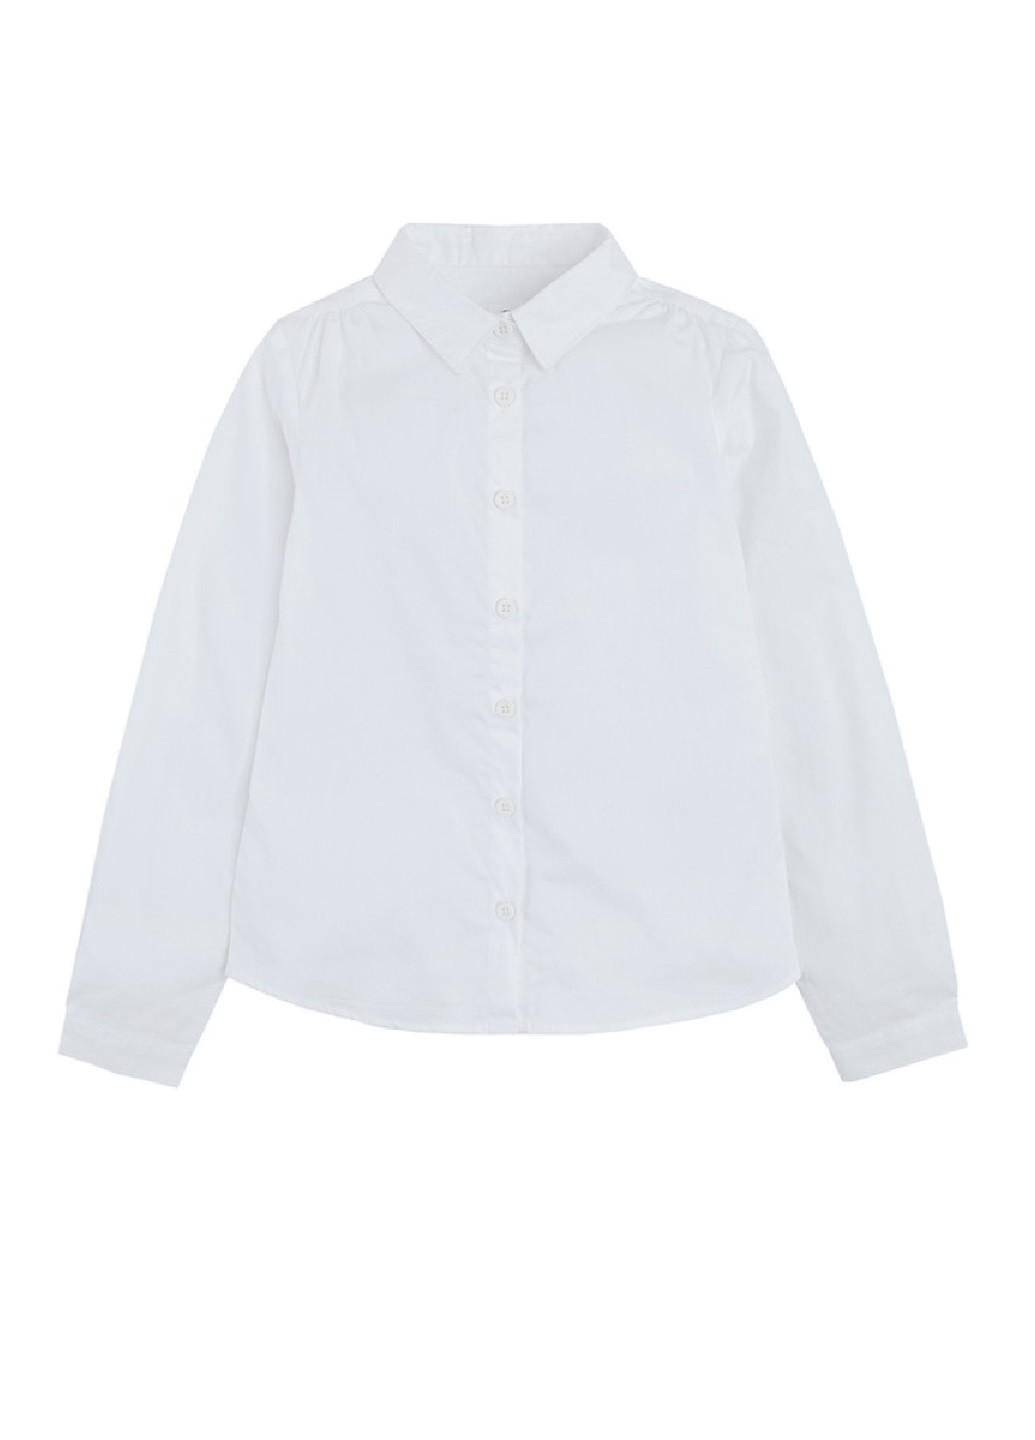 Белая однотонная блузка Cool Club демисезонная